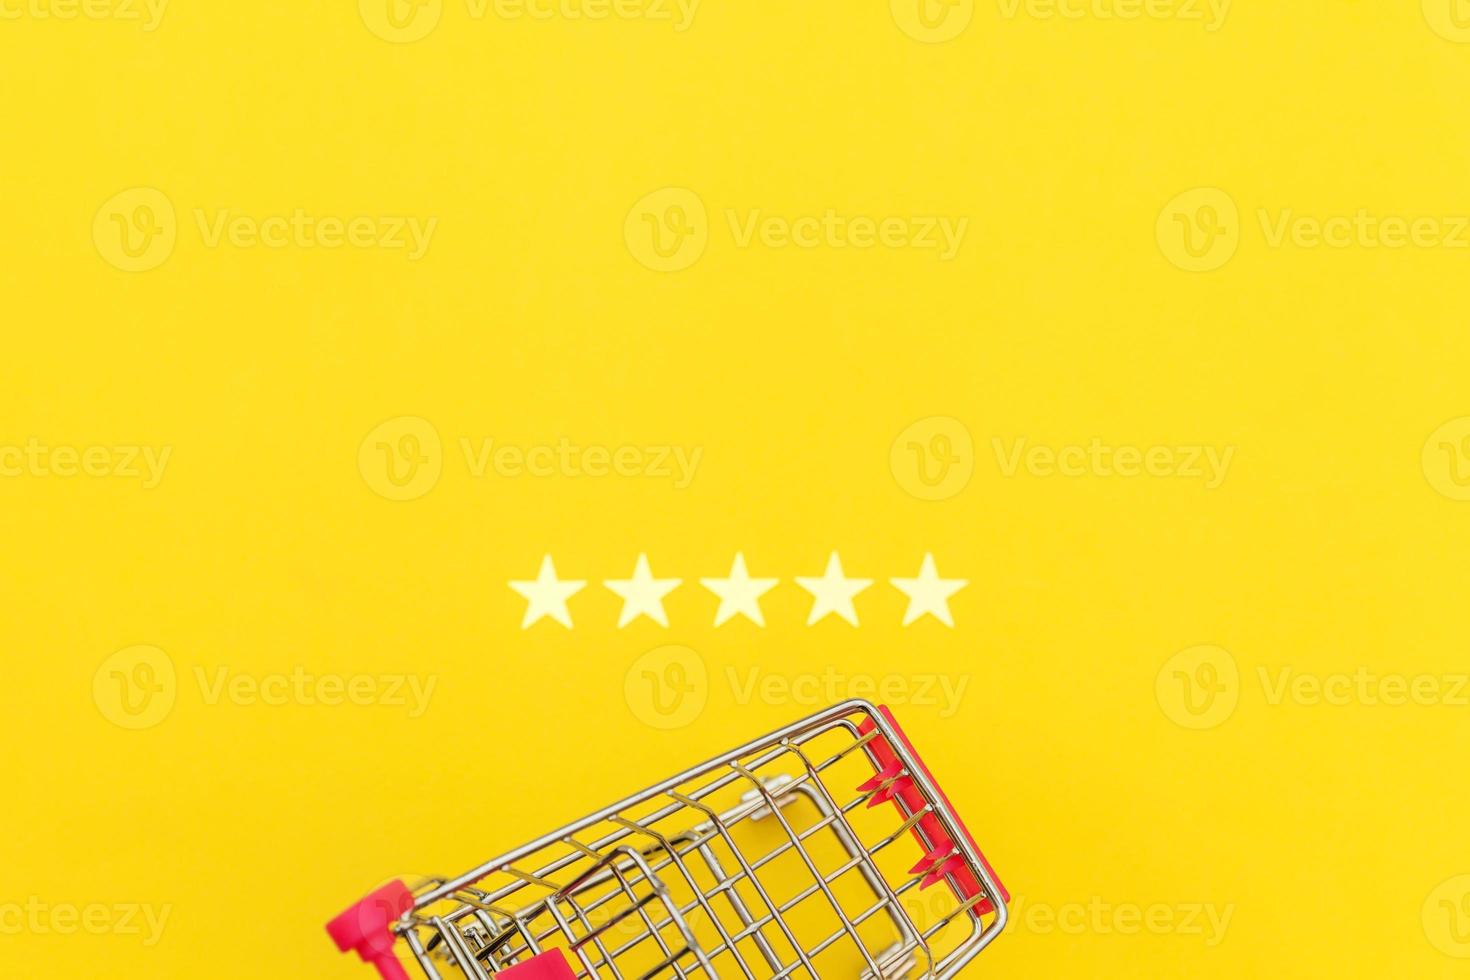 piccolo supermercato carrello per la spesa giocattolo con ruote e 5 stelle isolato su sfondo giallo. concetto di valutazione e revisione online dell'acquisto di consumatori al dettaglio. foto